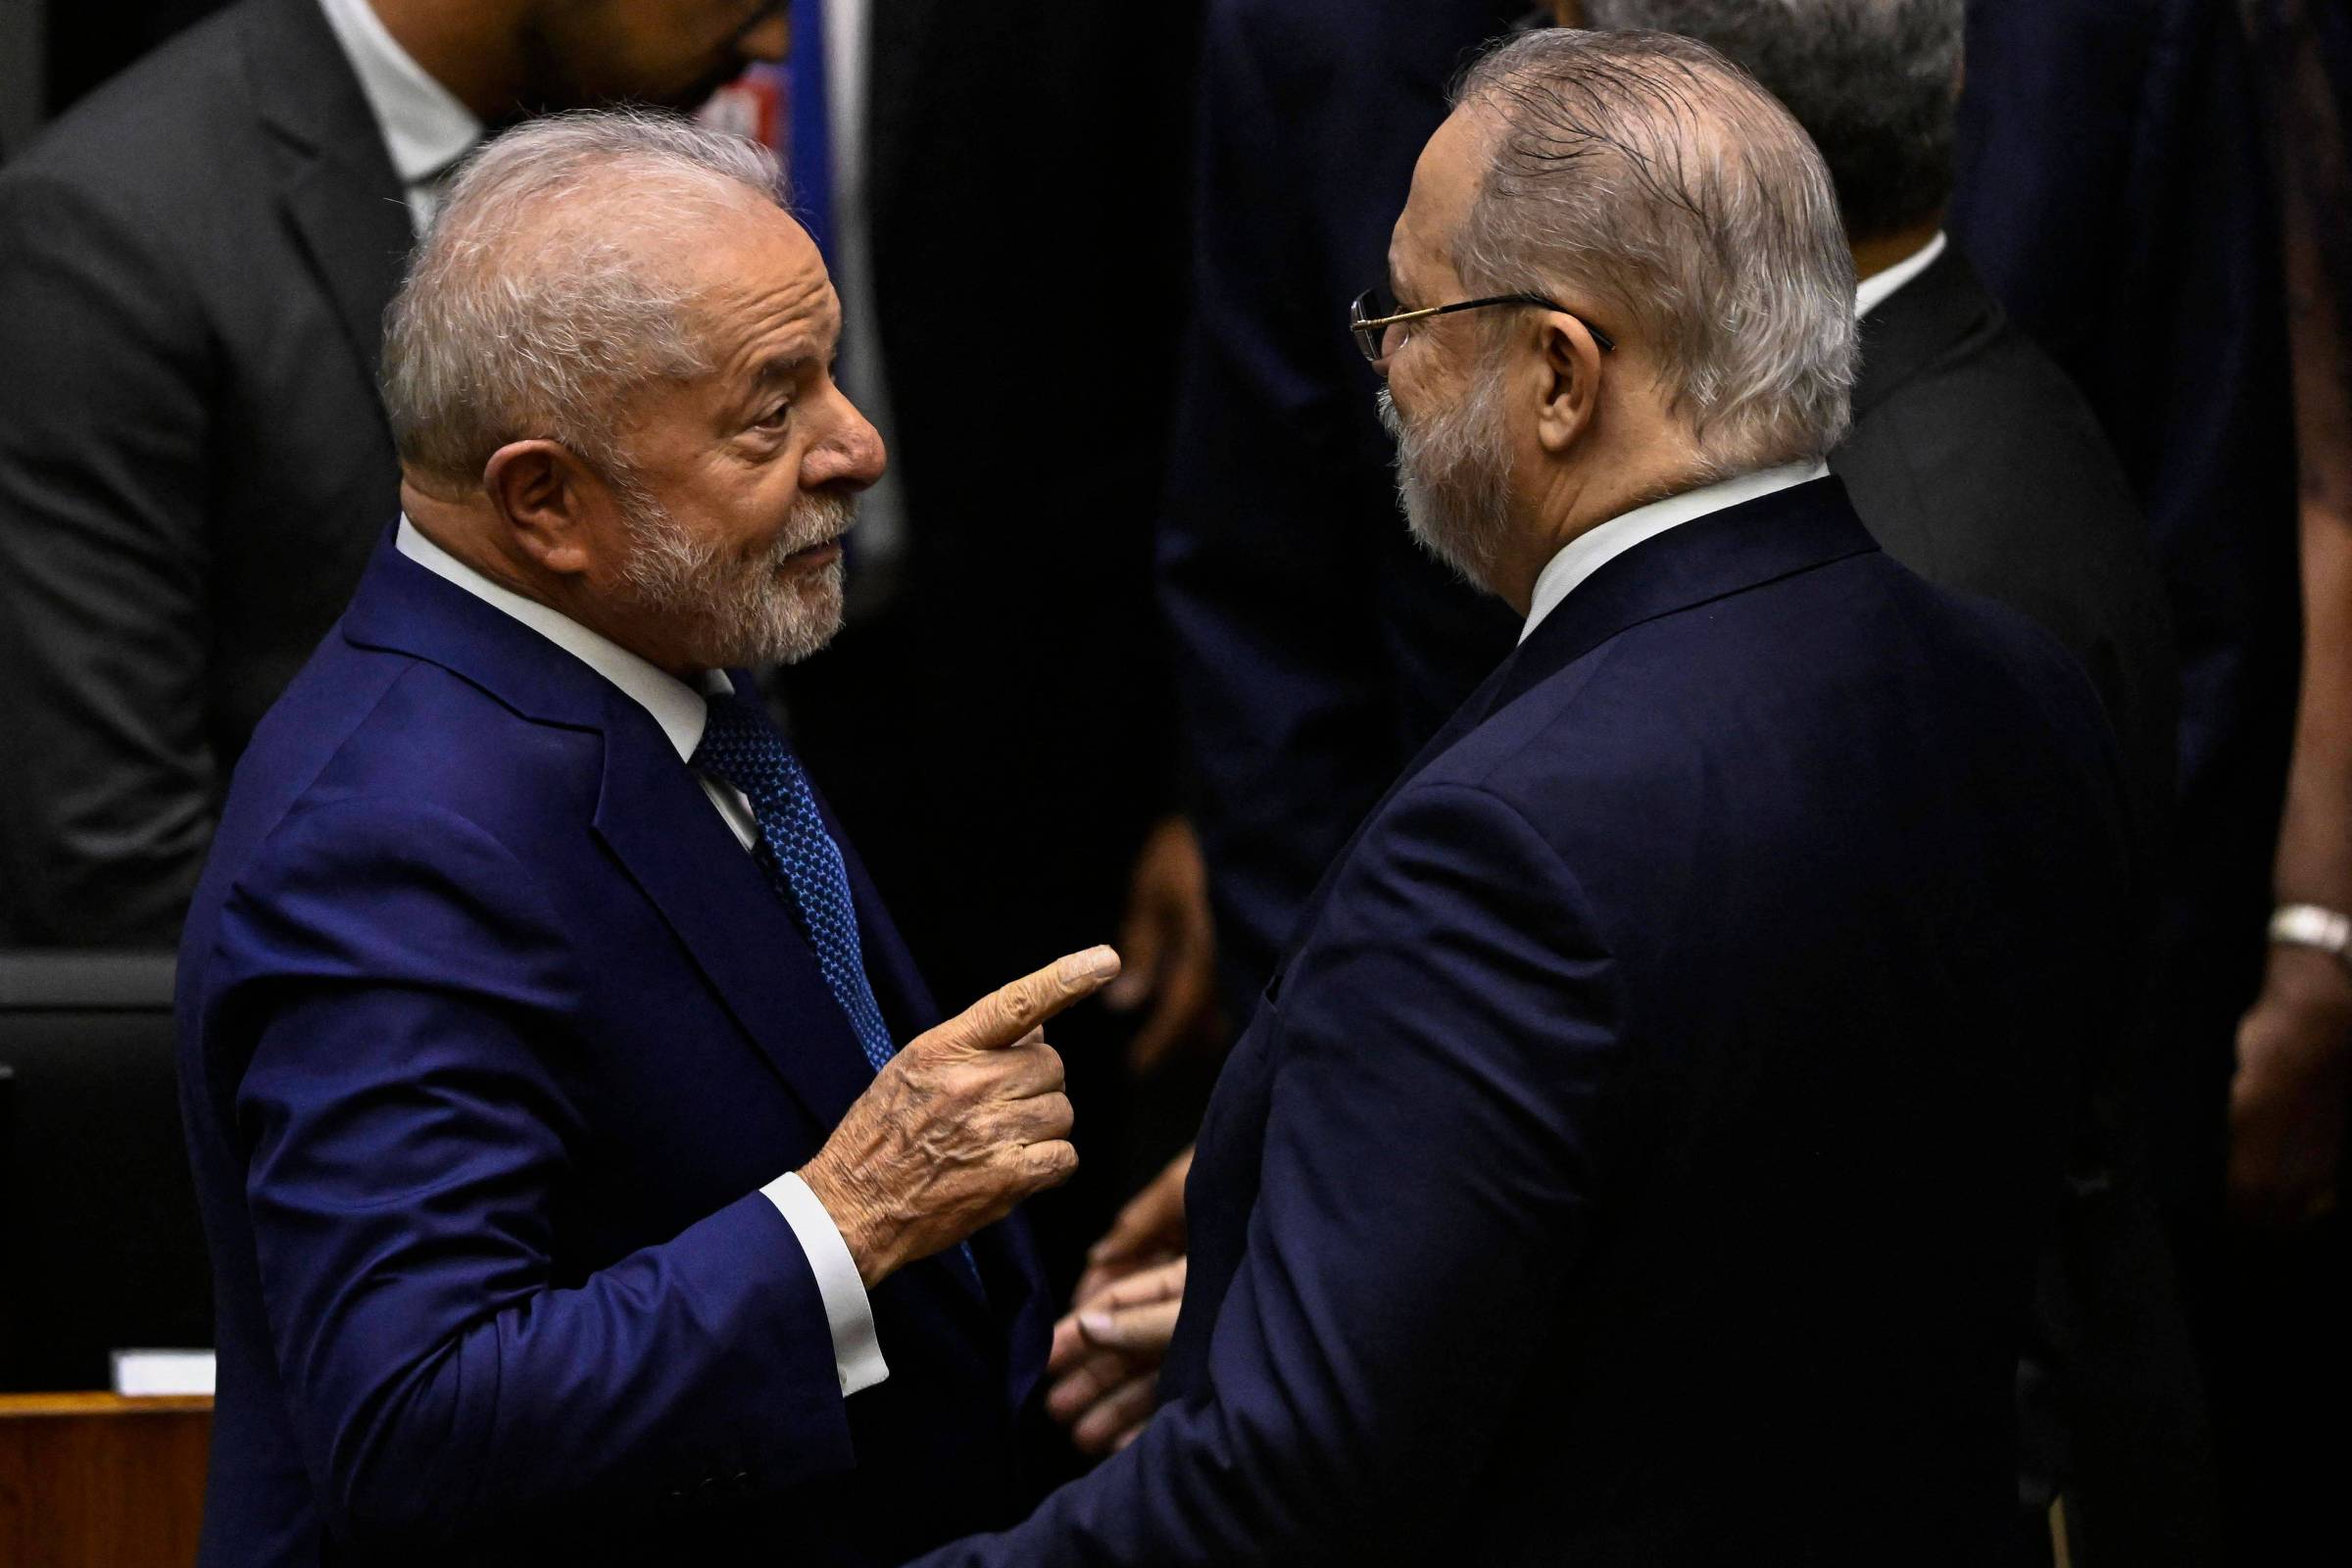 Lula tenta atrair lideranças emergentes da Baixada Fluminense para virar  votos no 2º turno das eleições - Política - Extra Online